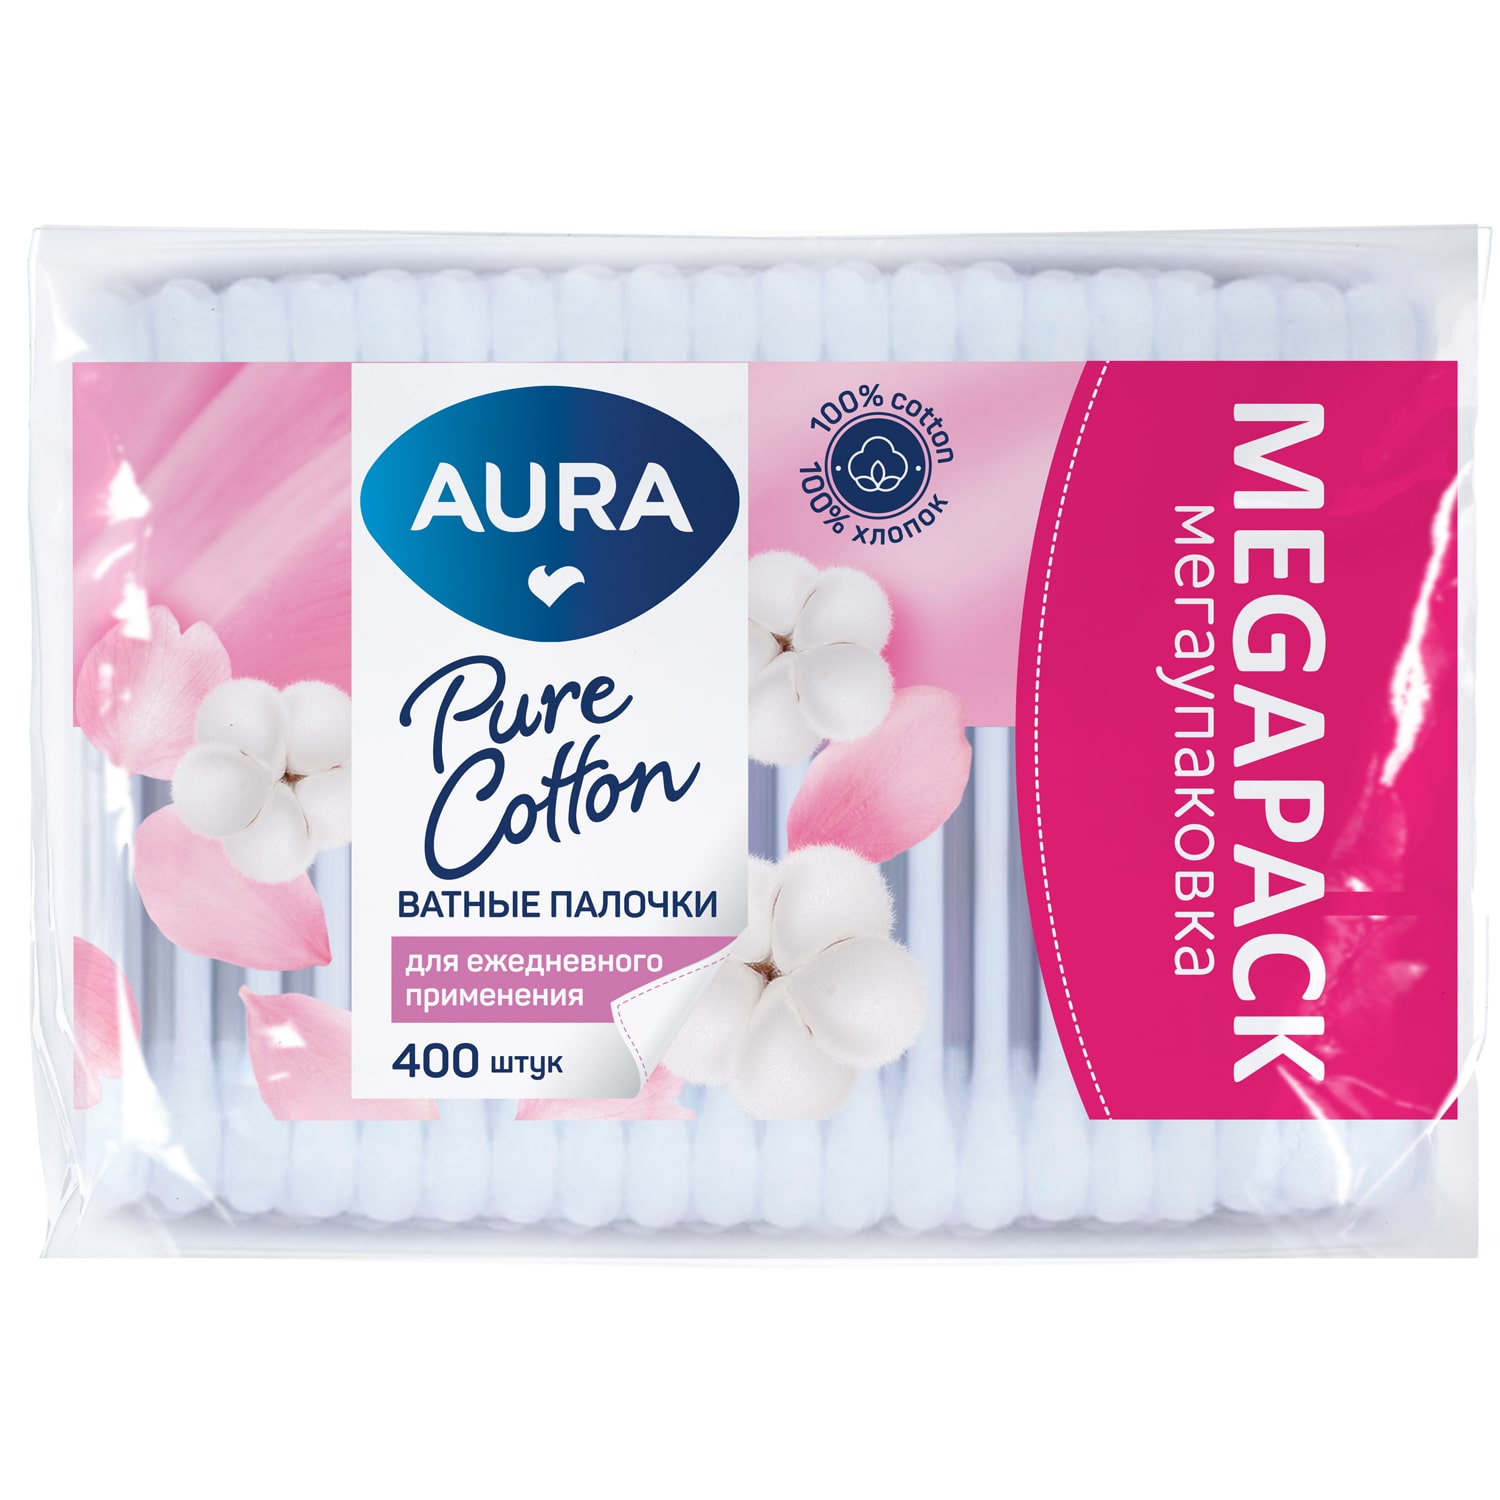 Aura Ватные палочки для ежедневного применения Pure Cotton в полиэтилене с автозапайкой, 400 шт (Aura, Гигиена) цена и фото